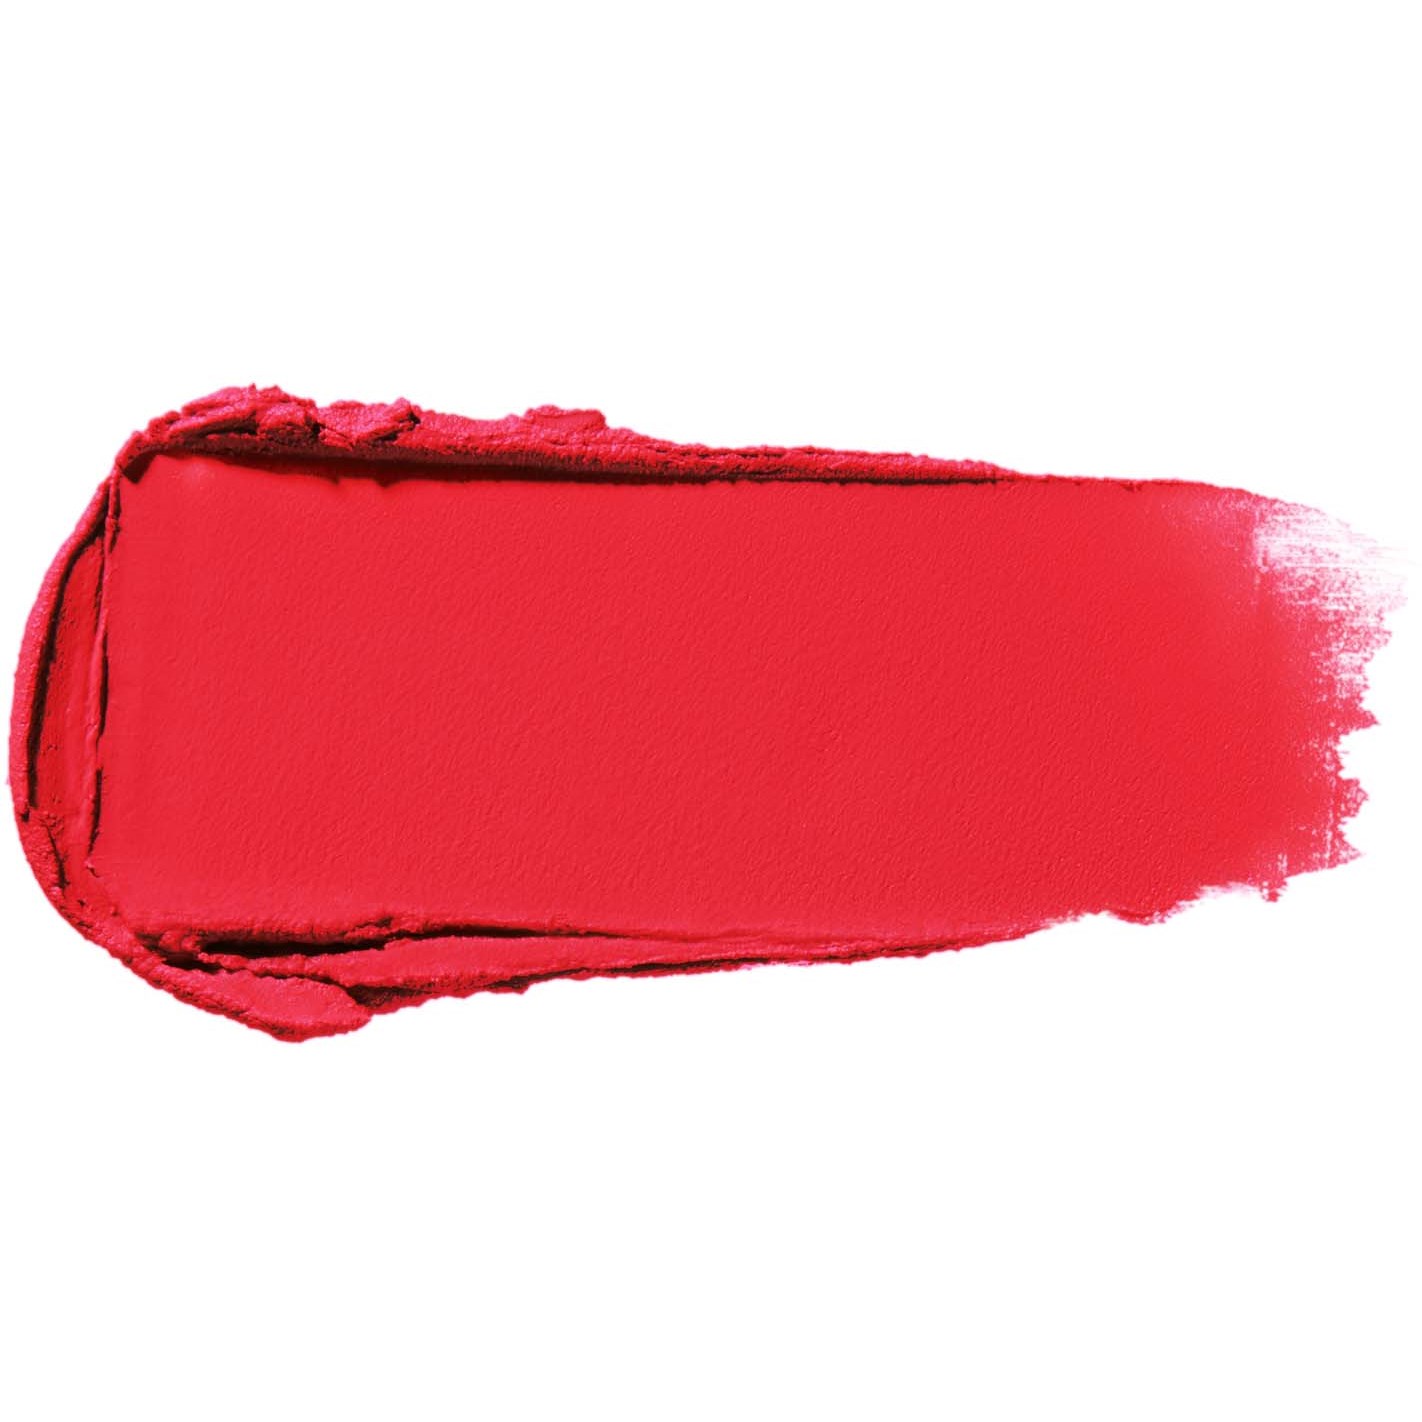 Bilde av Shiseido Modernmatte Powder Lipstick 513 Shock Wave